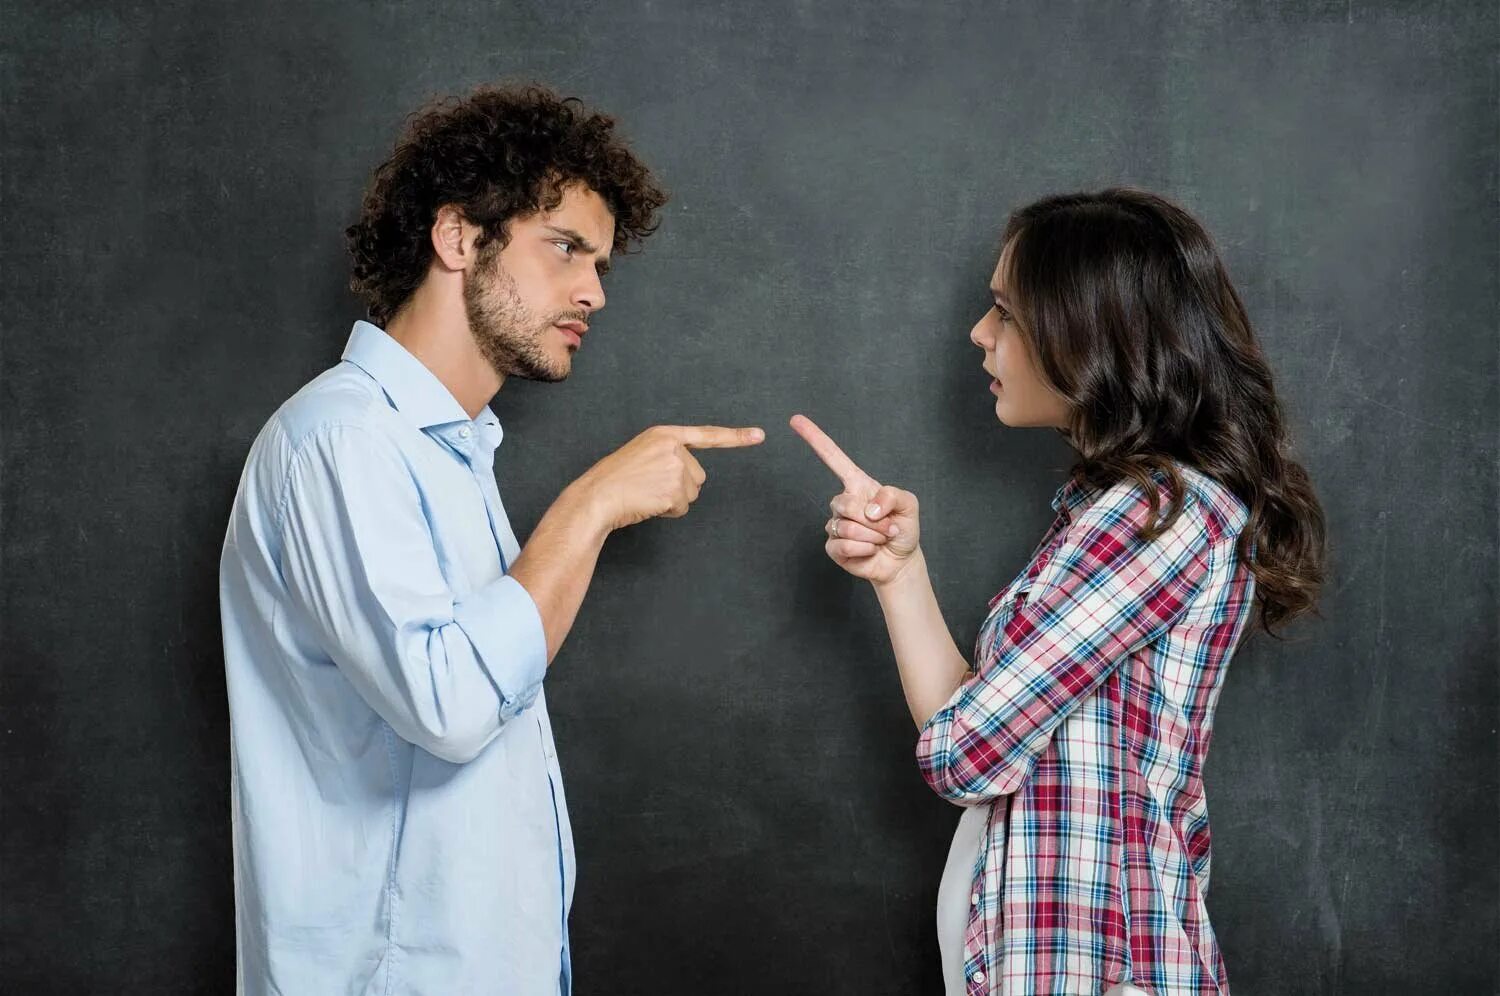 Проблема эмоция ситуация. Конфликт. Люди спорят. Мужчина и женщина спорят. Спор между мужчиной и женщиной.